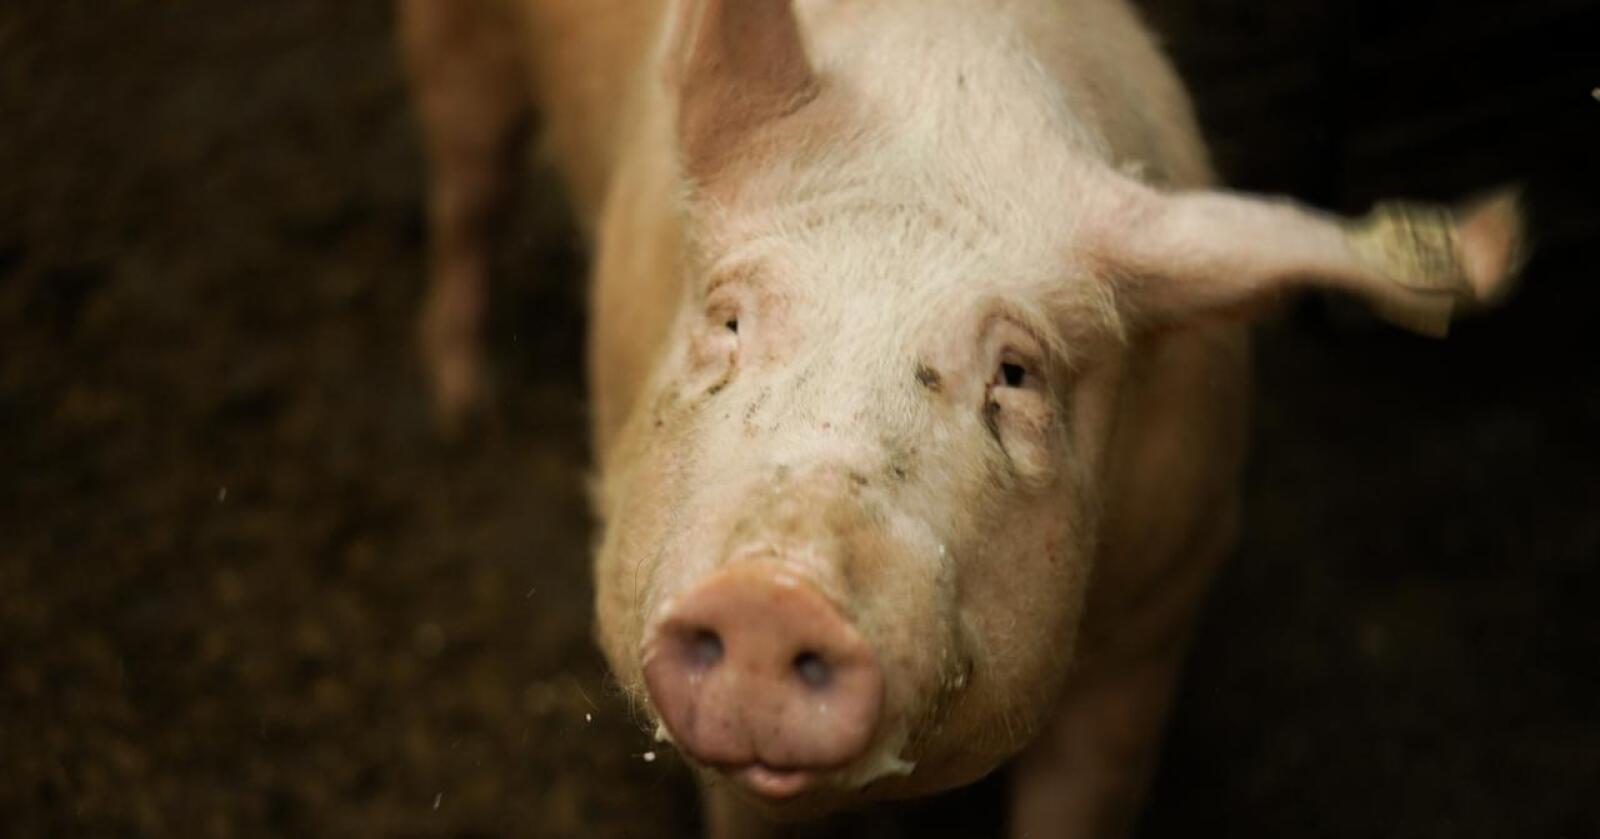 Ifølge Nortura har det totale salget av grillprodukter av svin hittil i år vært høyere enn de to foregående årene. Illustrasjonsfoto: Benjamin H. Vogl